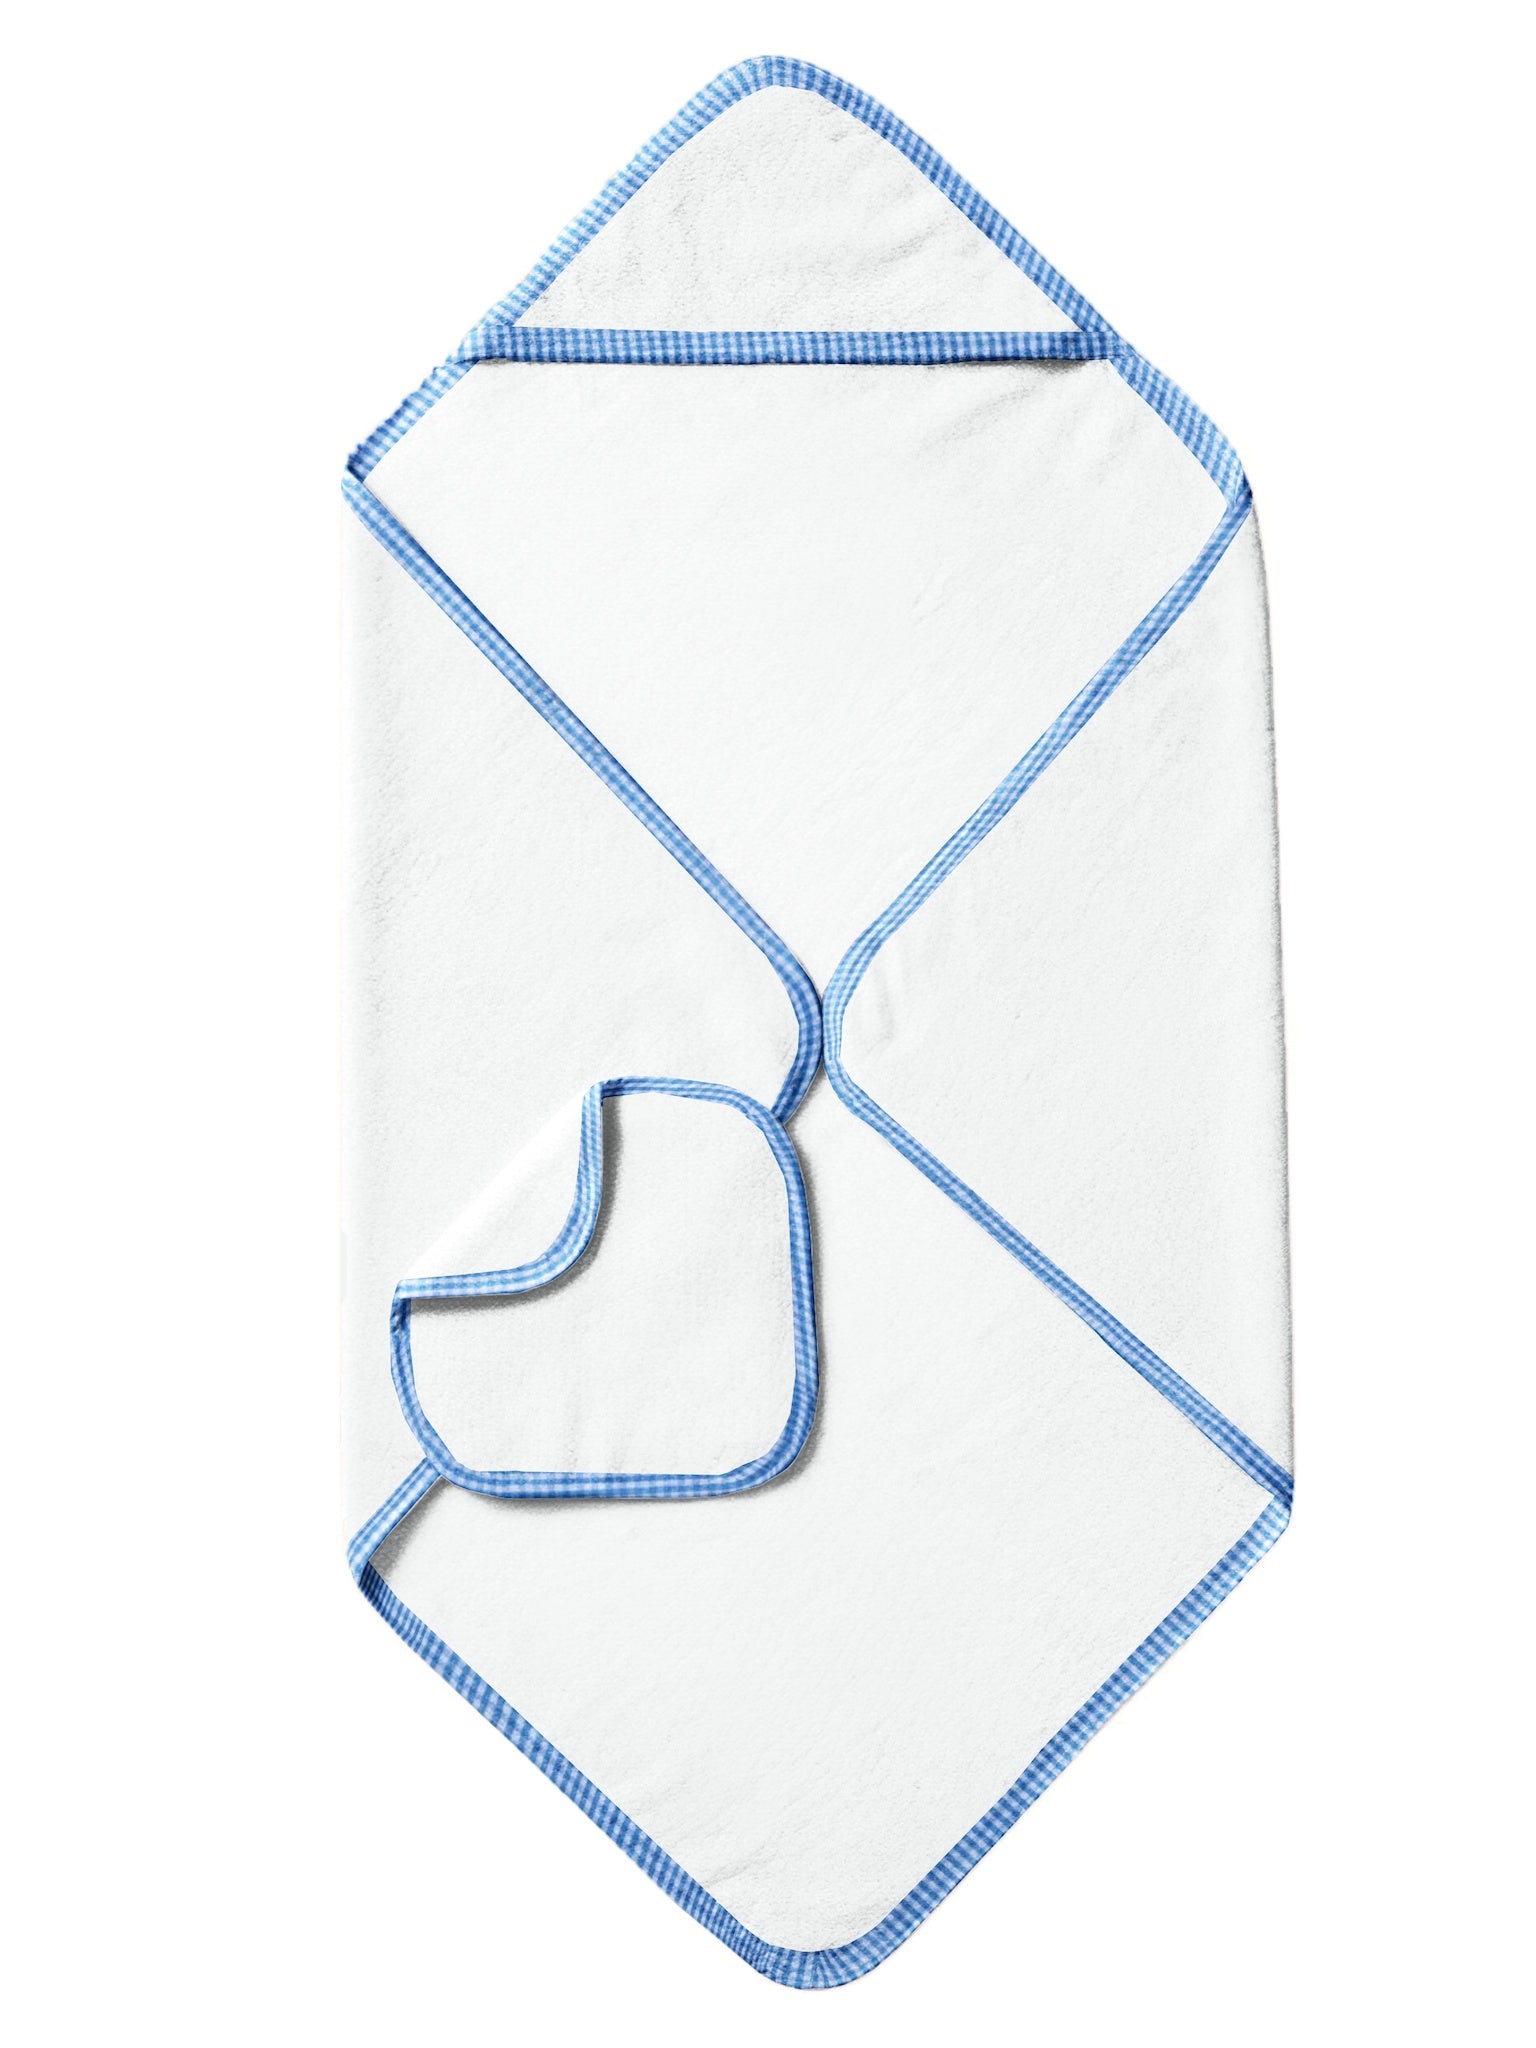 ‘Blue Checks’ Organic Hooded Towel Set